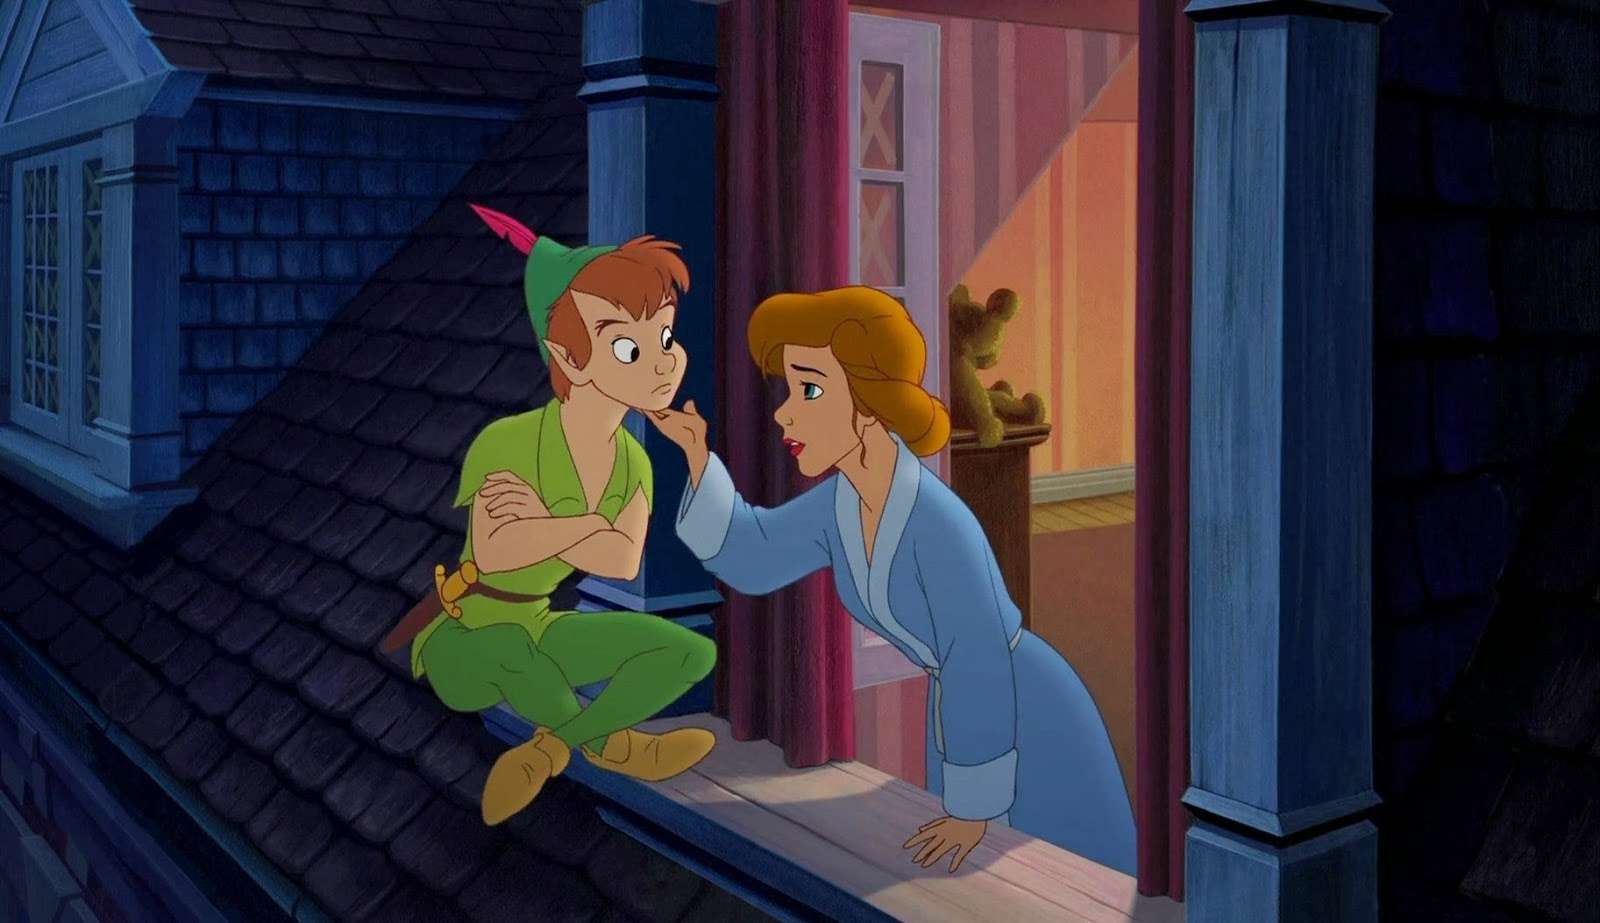 Peter Pan de volta à ilha puzzle online